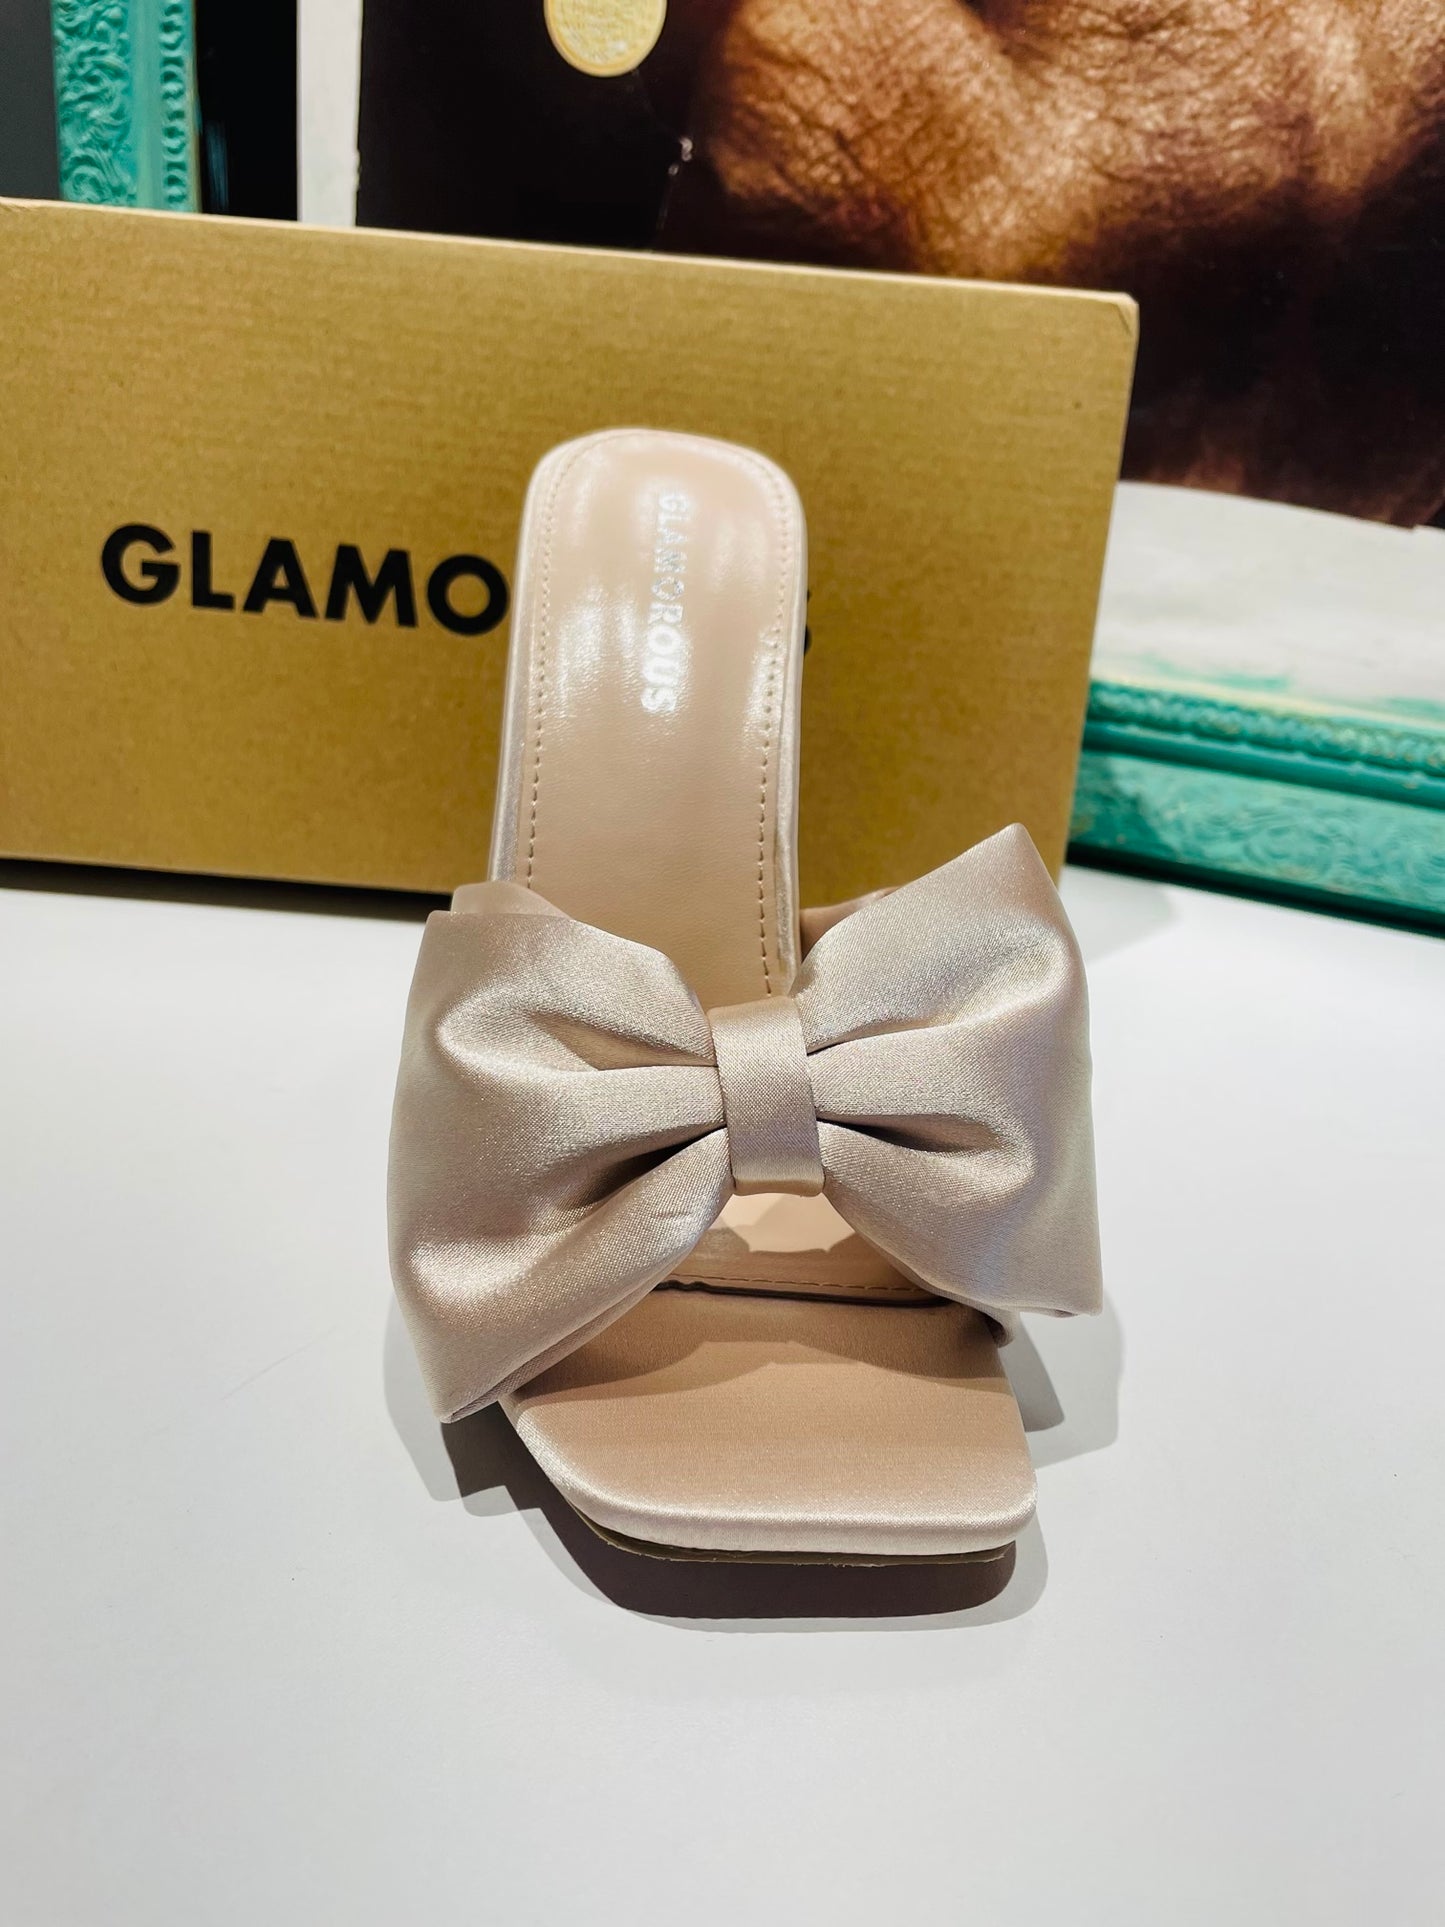 Glamorous shoes